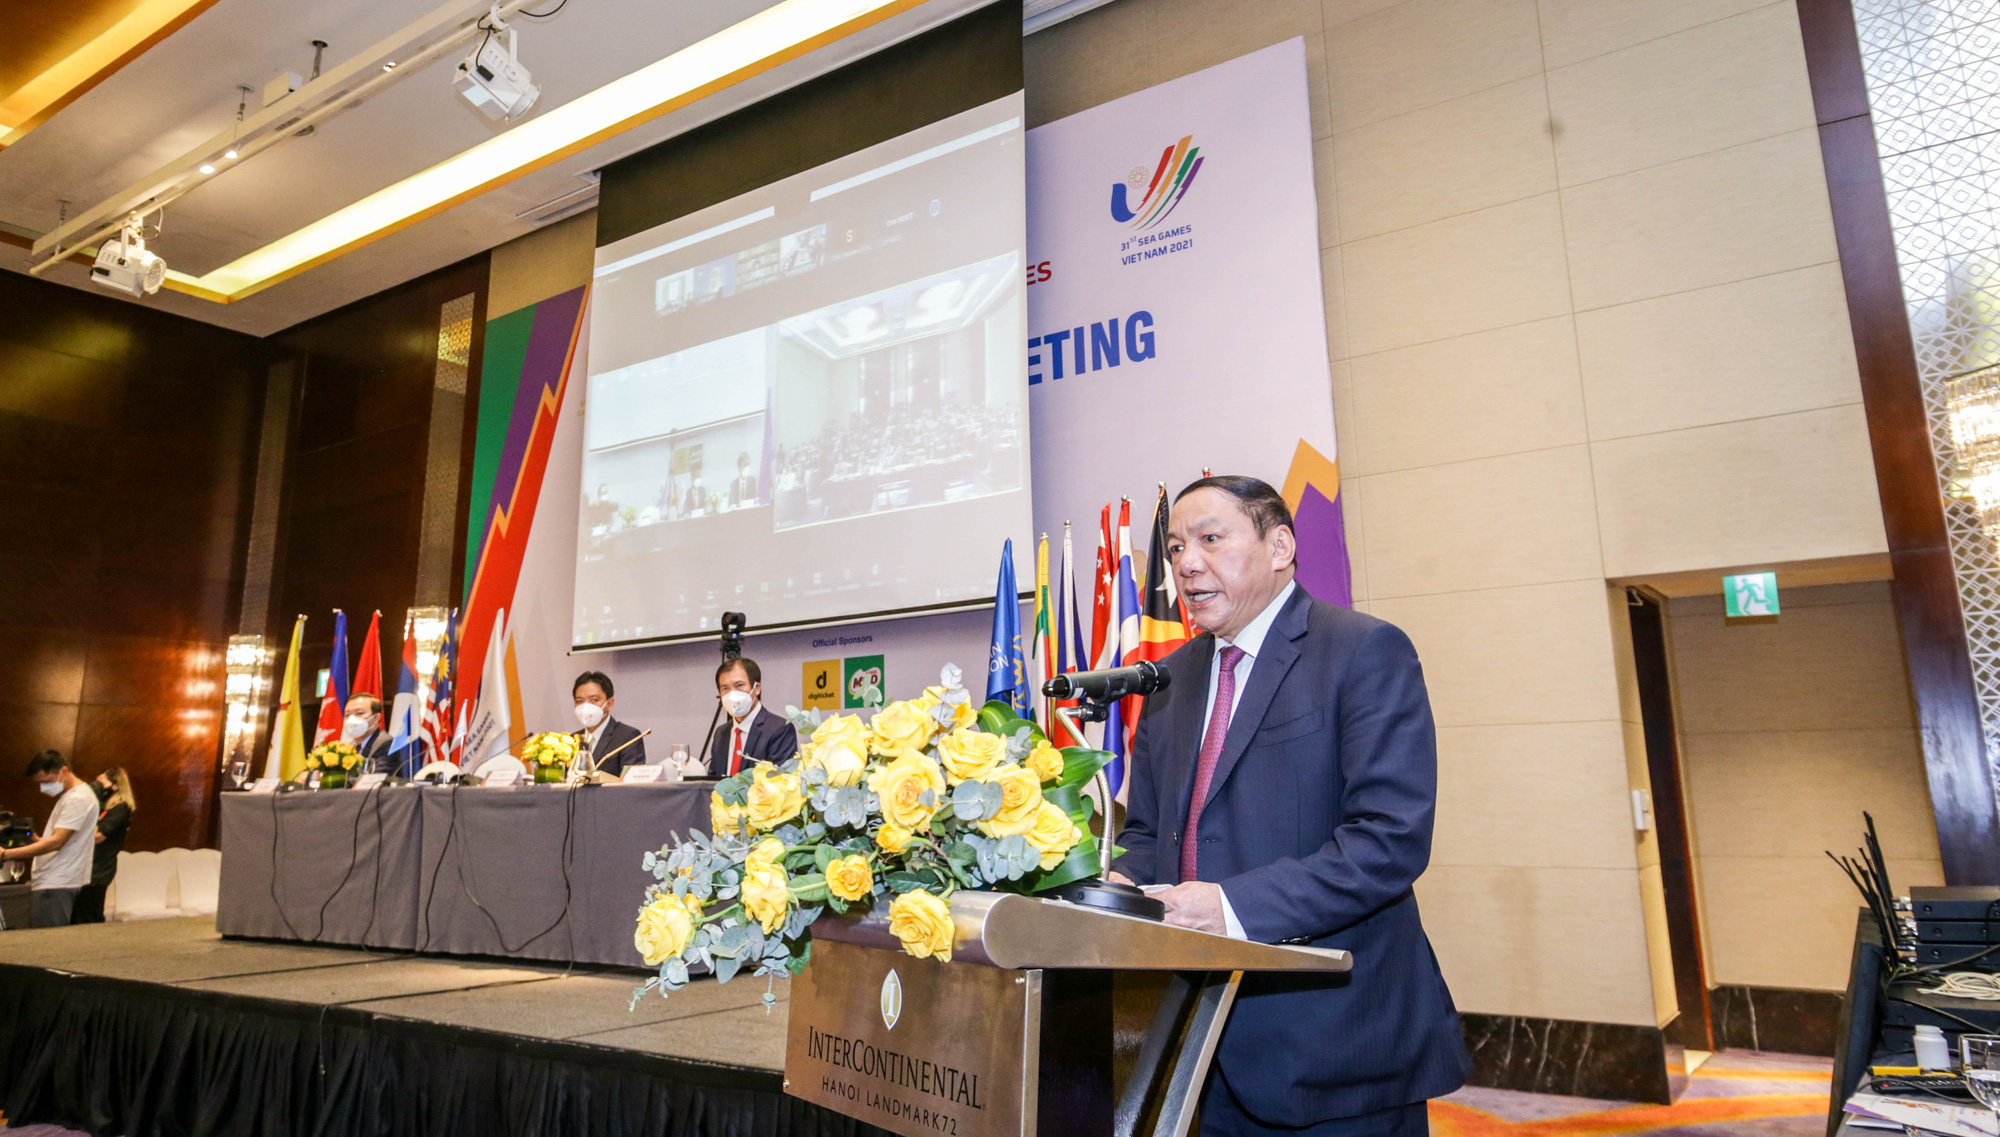 Bộ trưởng Nguyễn Văn Hùng: Việt Nam mong muốn nhận sự chung tay, sẻ chia để SEA Games 31 được tổ chức an toàn, thành công, tạo nhiều ấn tượng tốt đẹp - Ảnh 2.